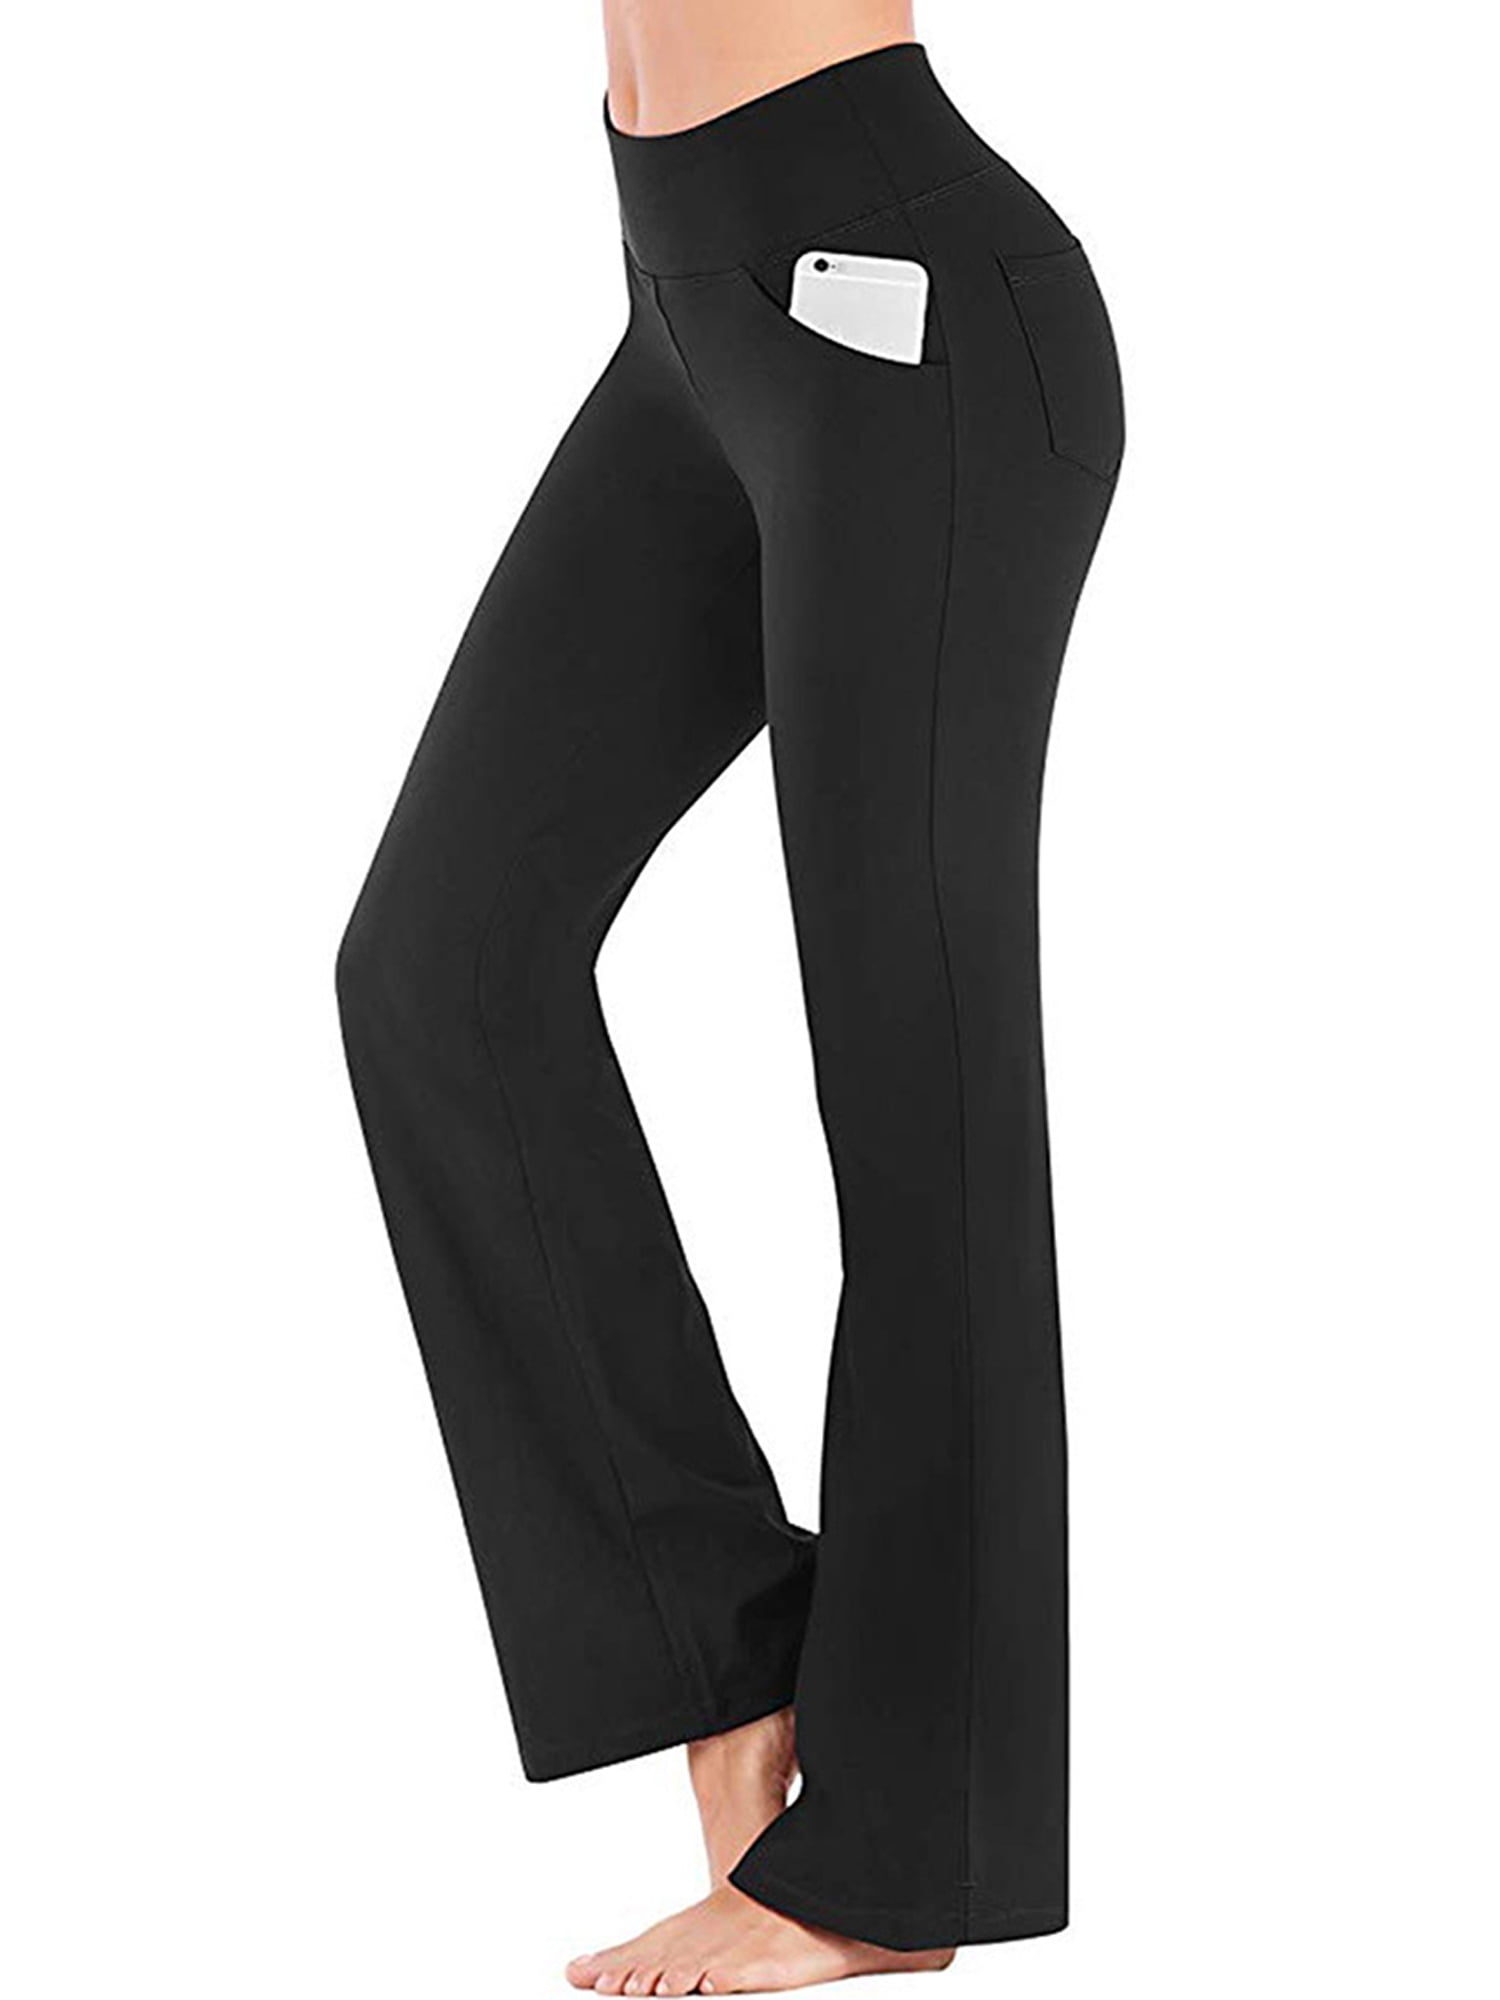 Hanerdun Women Bootcut Yoga Pants with Pockets Female High Waist Bootleg Trousers  Workout Activewear Black XL 